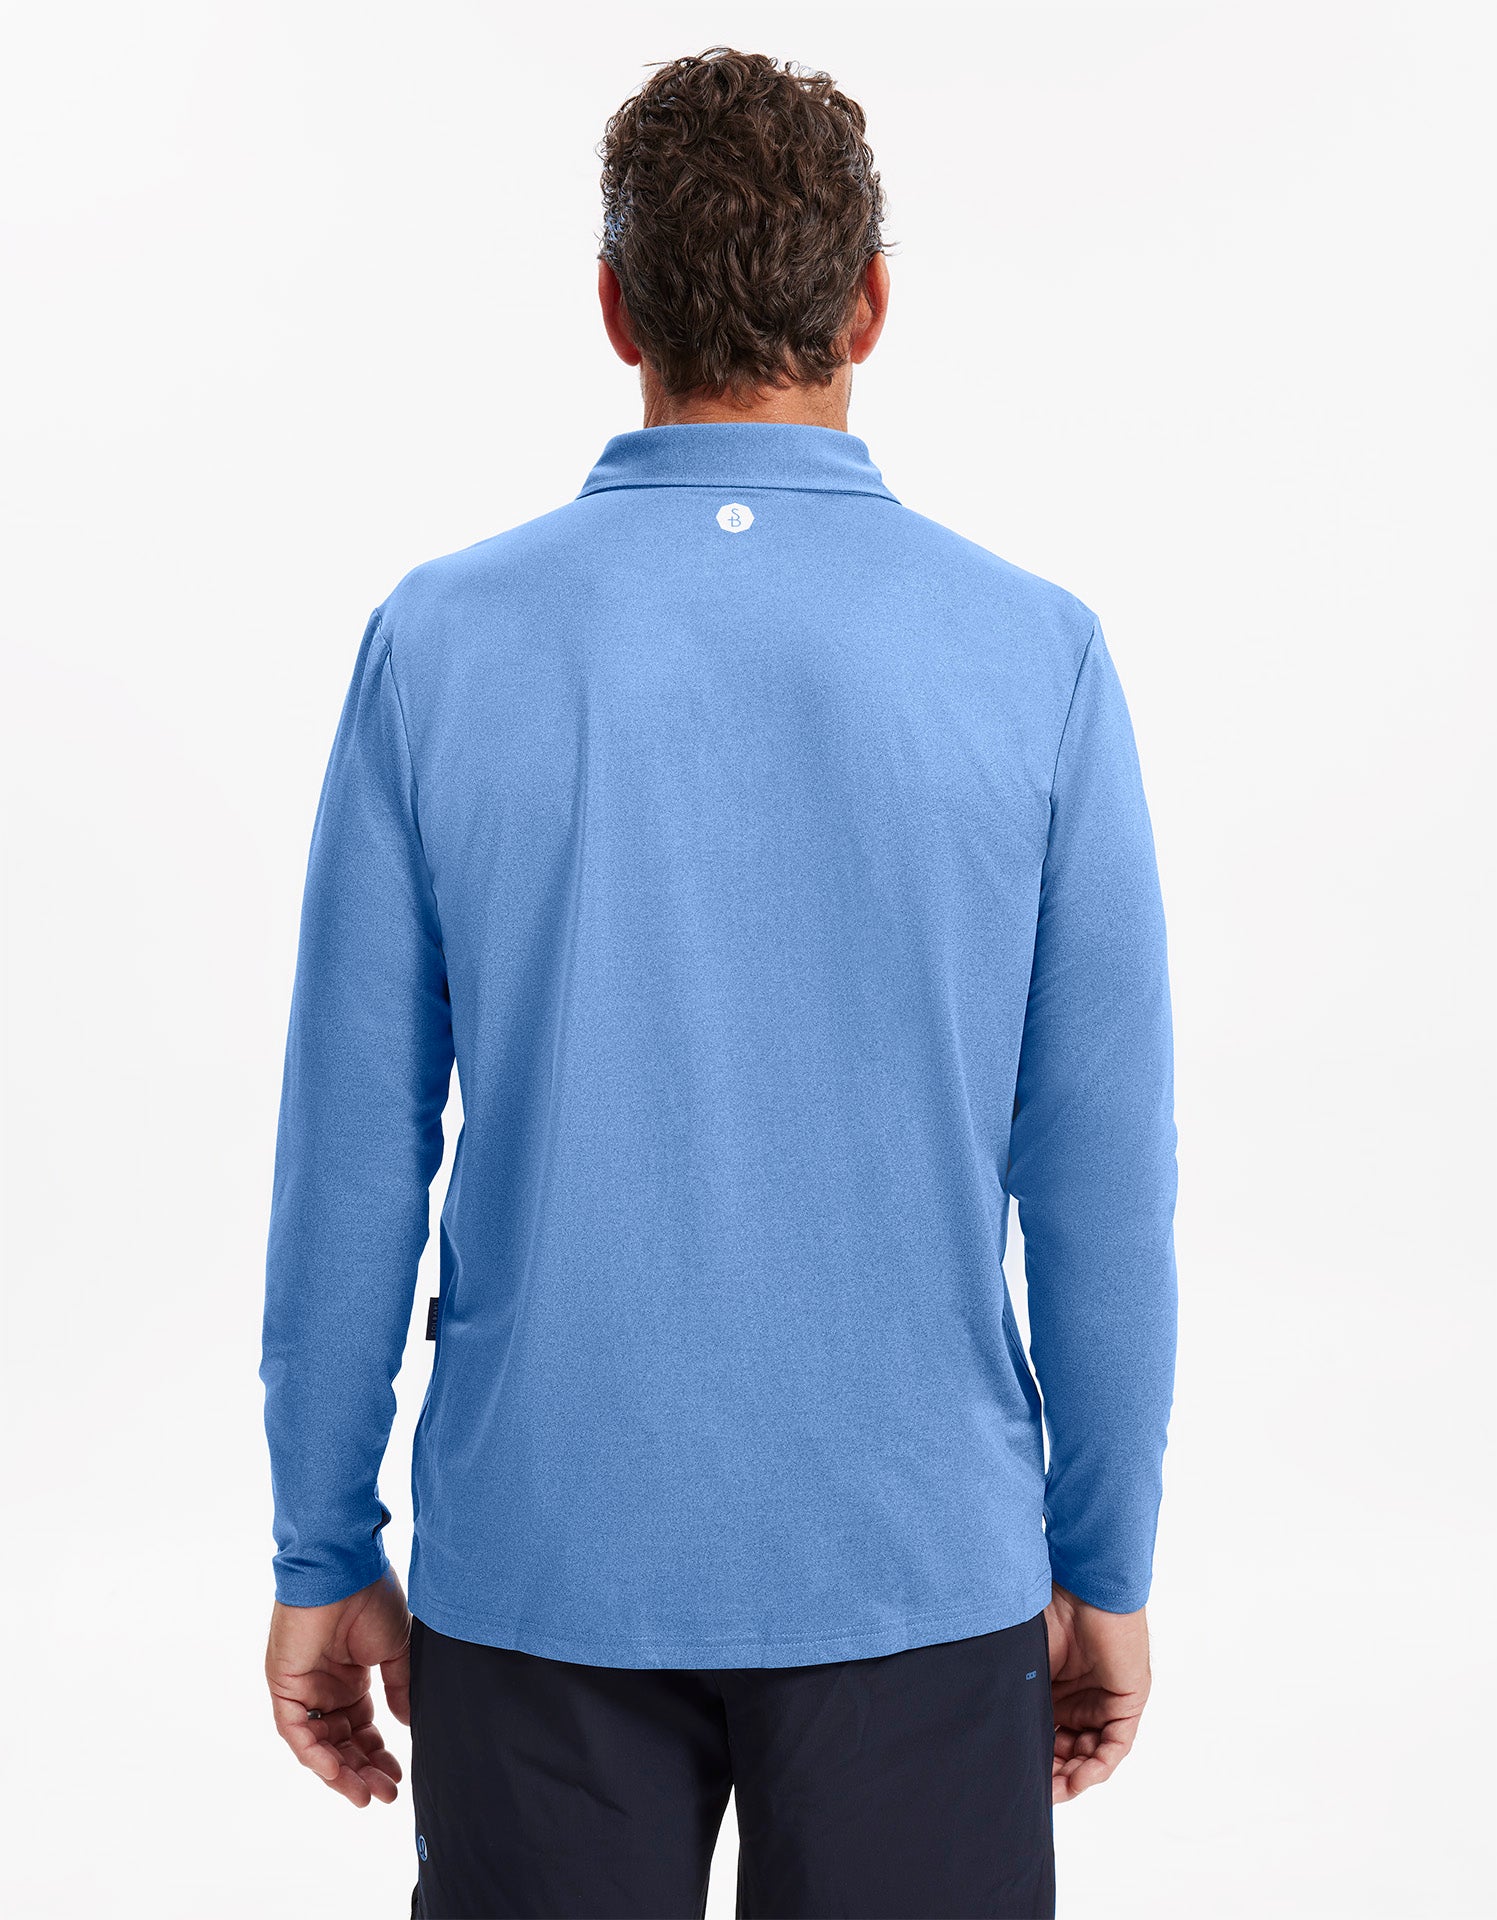 Men's BodyShade® Polo  Mens shirts, Men, Sun protective clothing